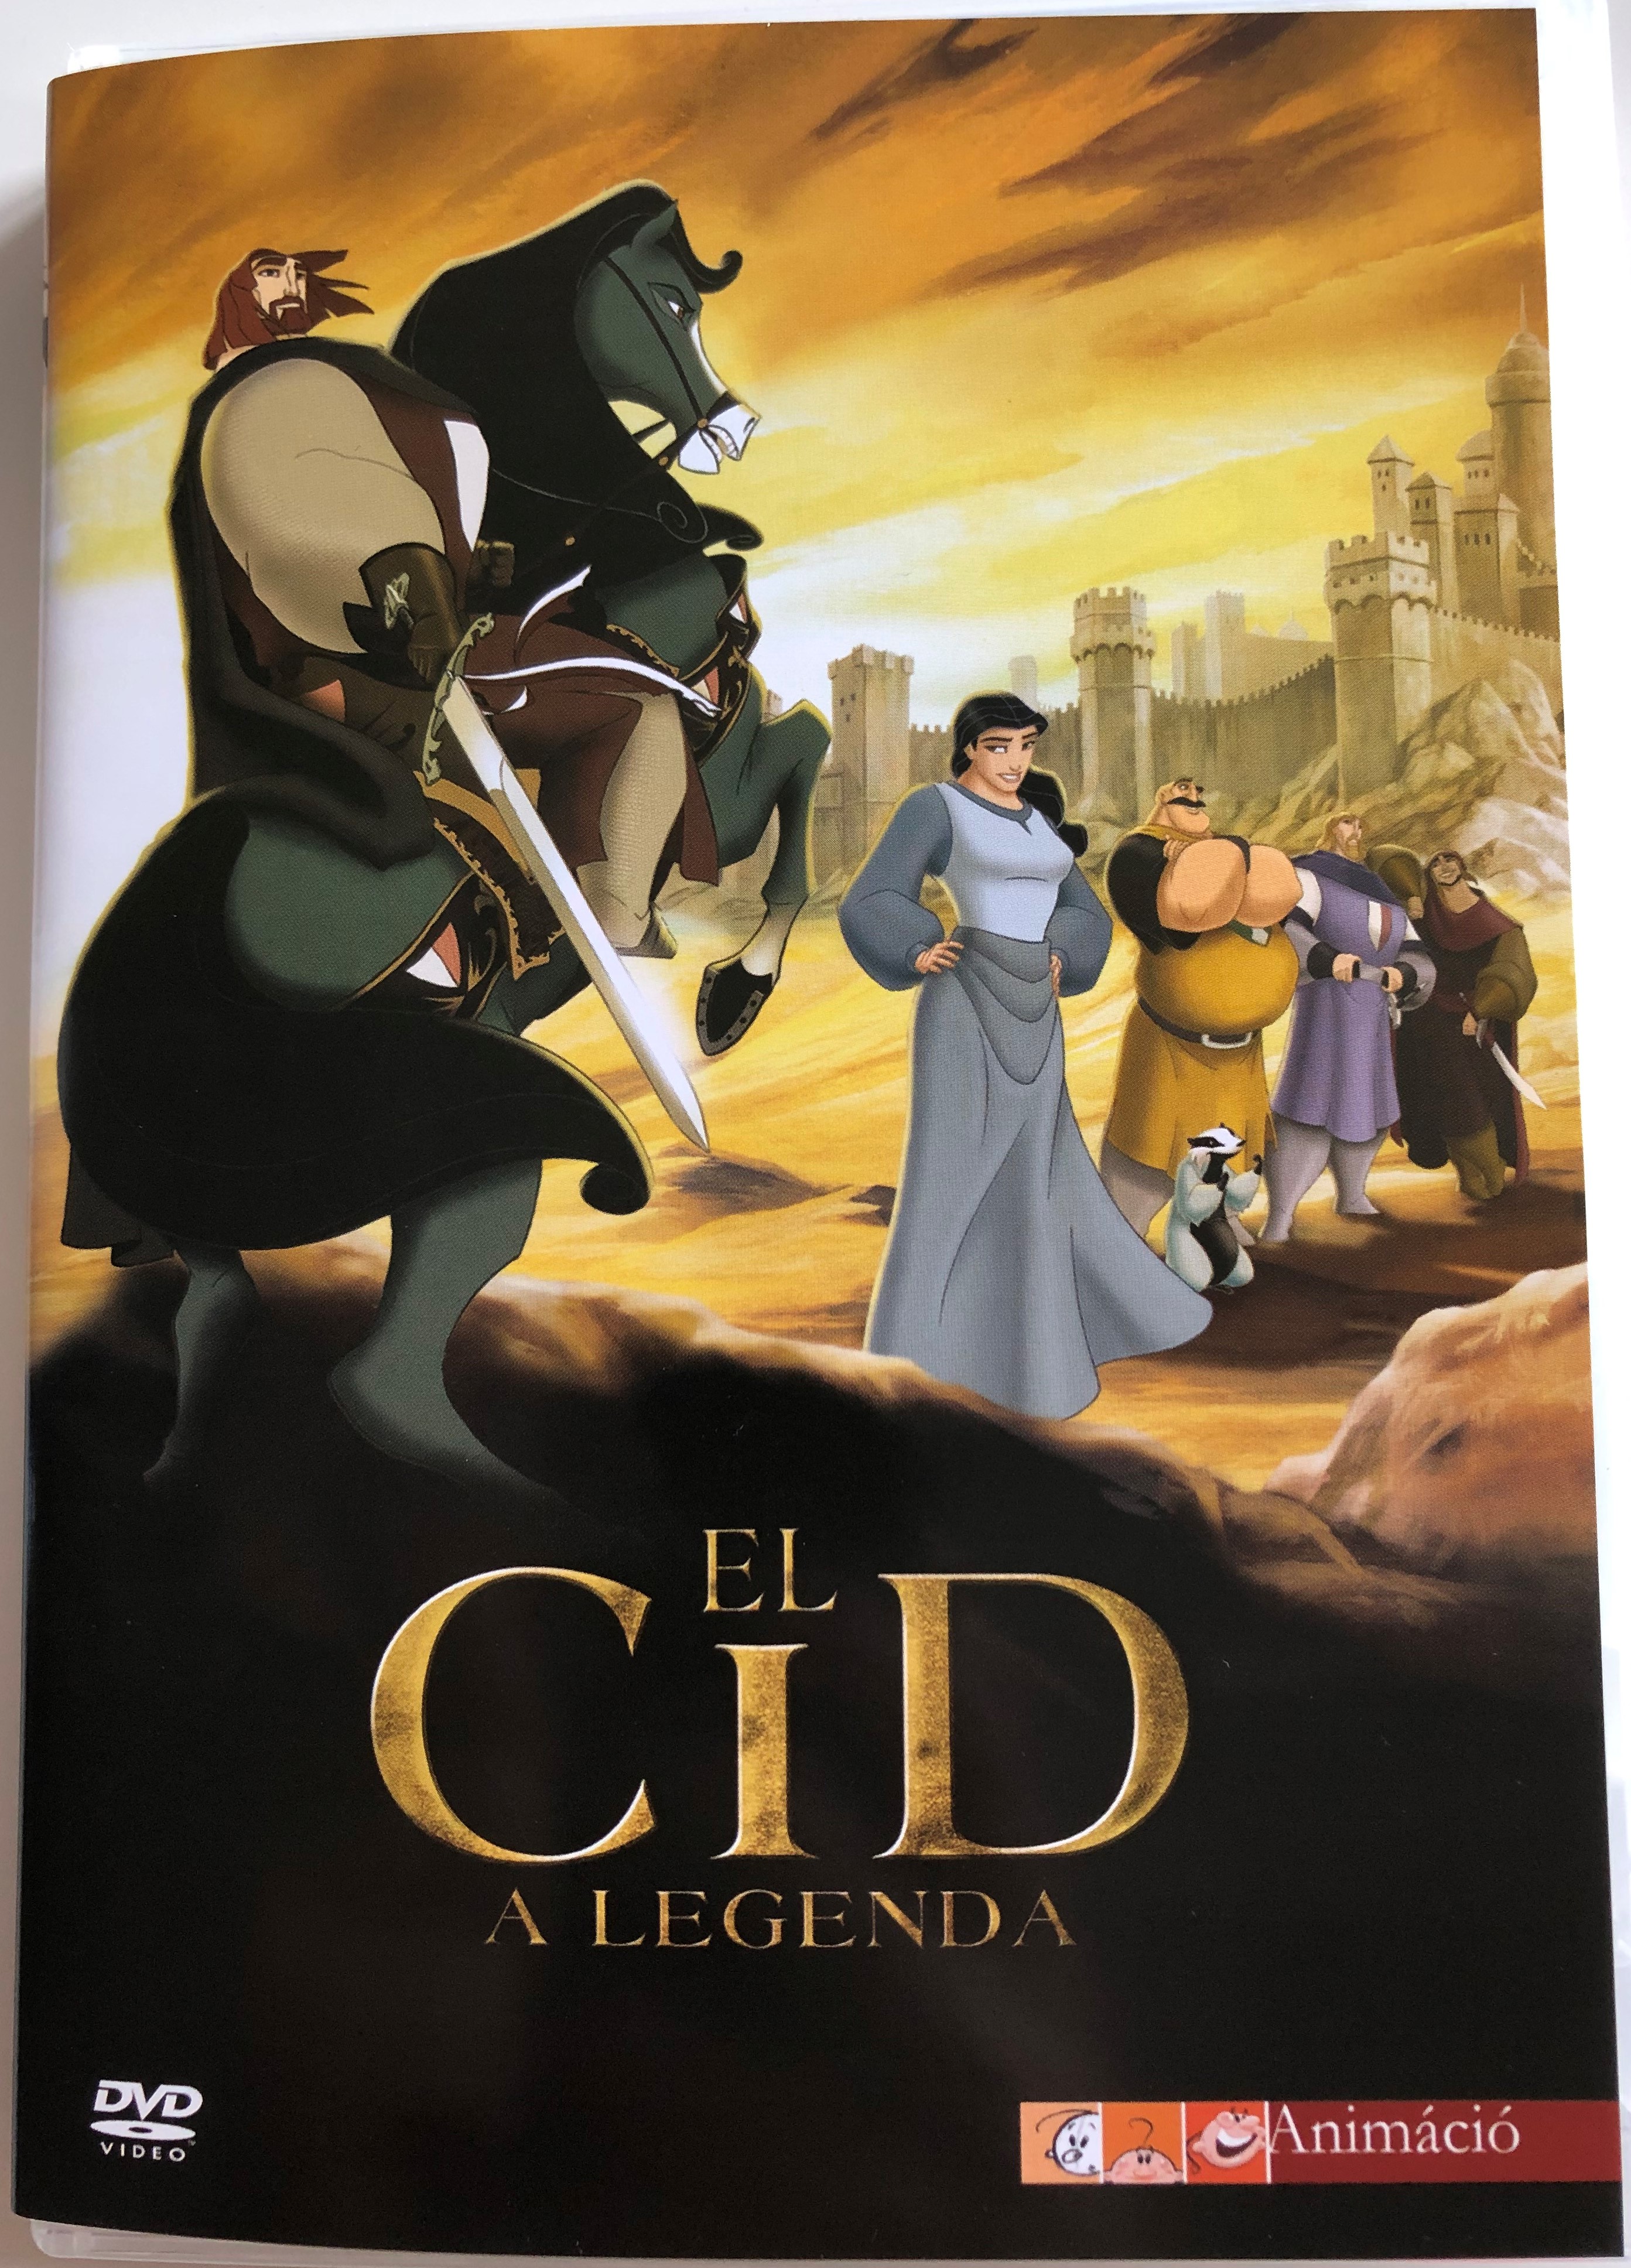 El Cid: La leyenda DVD 2003 El Cid - A legenda / Directed by José Pozo /  Starring: Manel Fuentes (Rodrigo Díaz de Vivar) Sancho Gracia (Conde  Gormaz) Carlos Latre (Ben Yussuf /